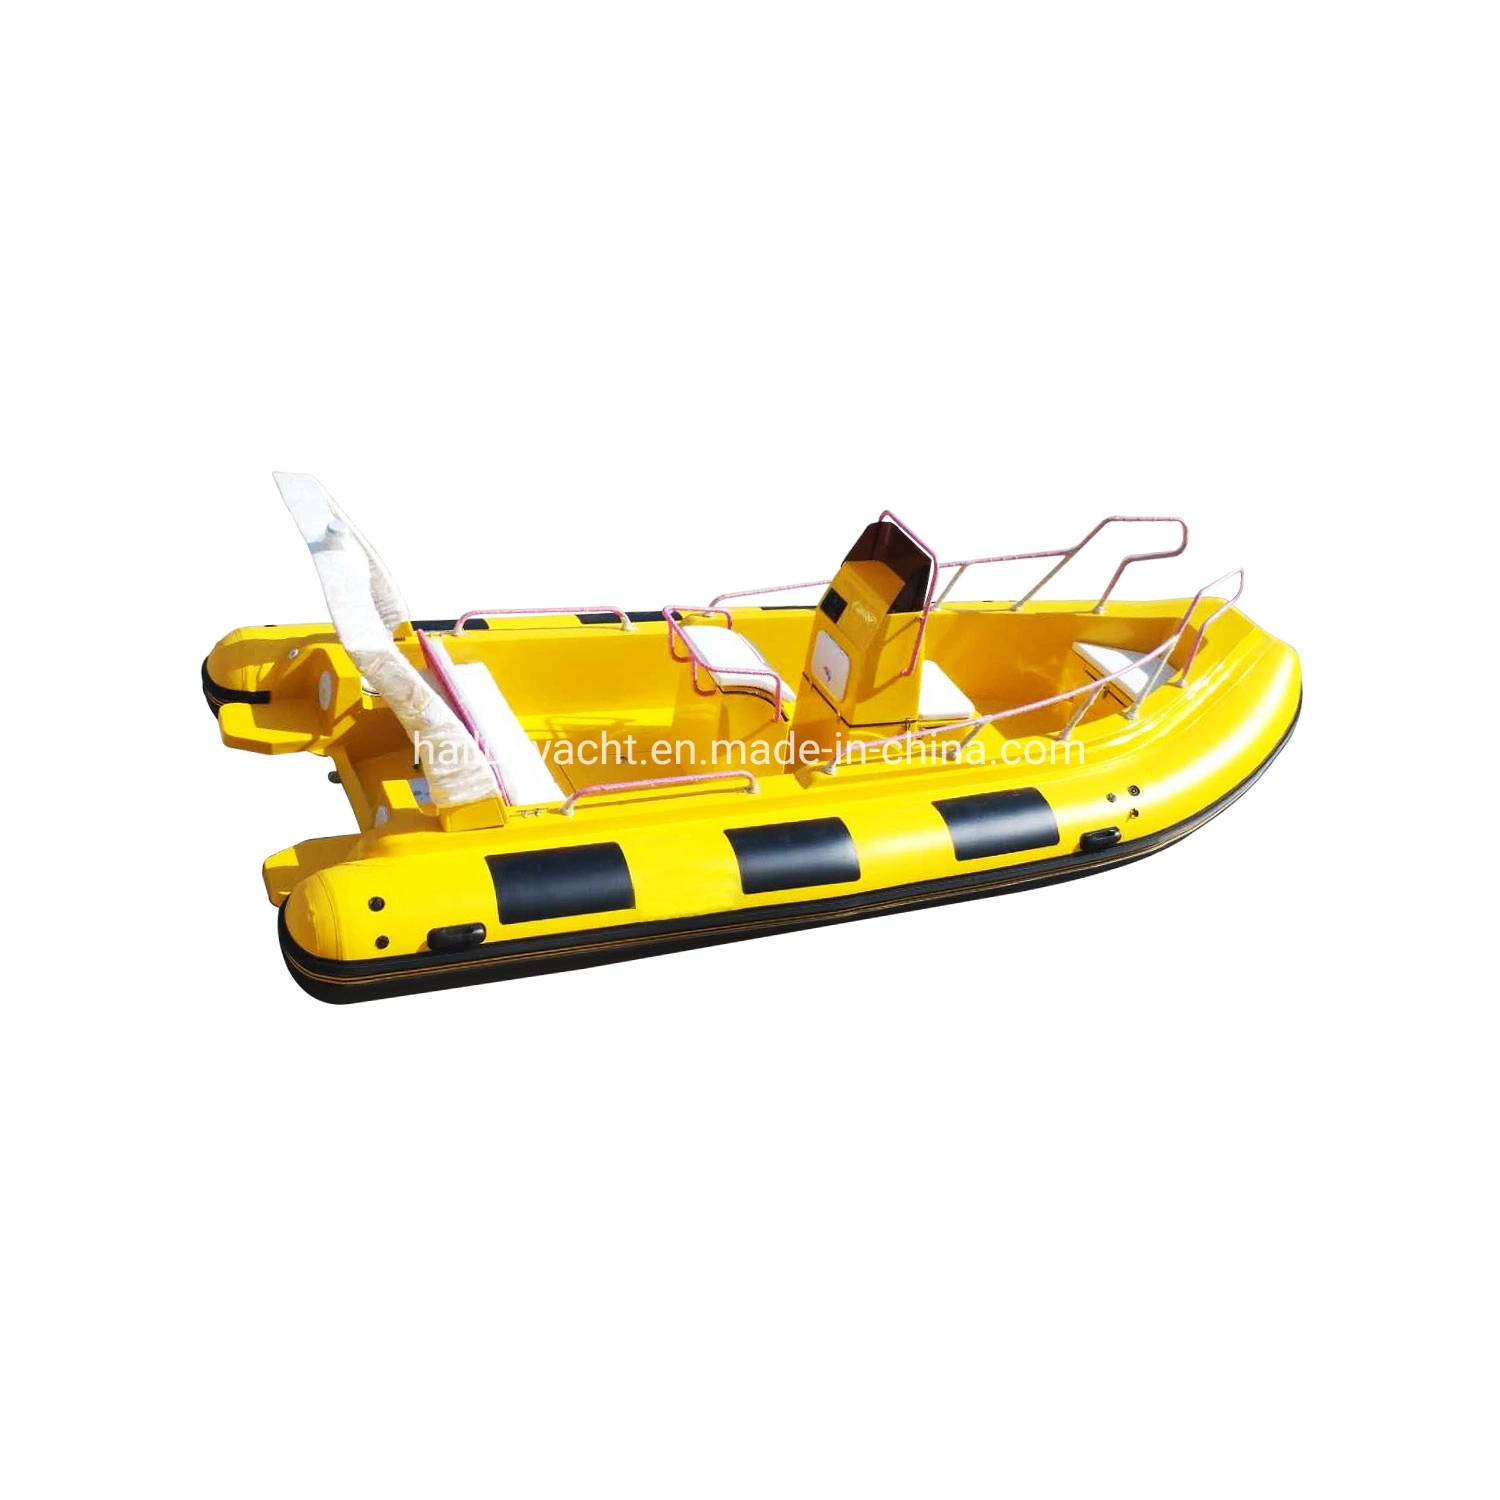 5.8م/ 19 قدم PVC/Hypalon Rip Boat/Power Boat/Motor Boat/Fishing Boat/Speed Boat مع الكونسول المركزي قارب القابل للانتفاخ Rib580